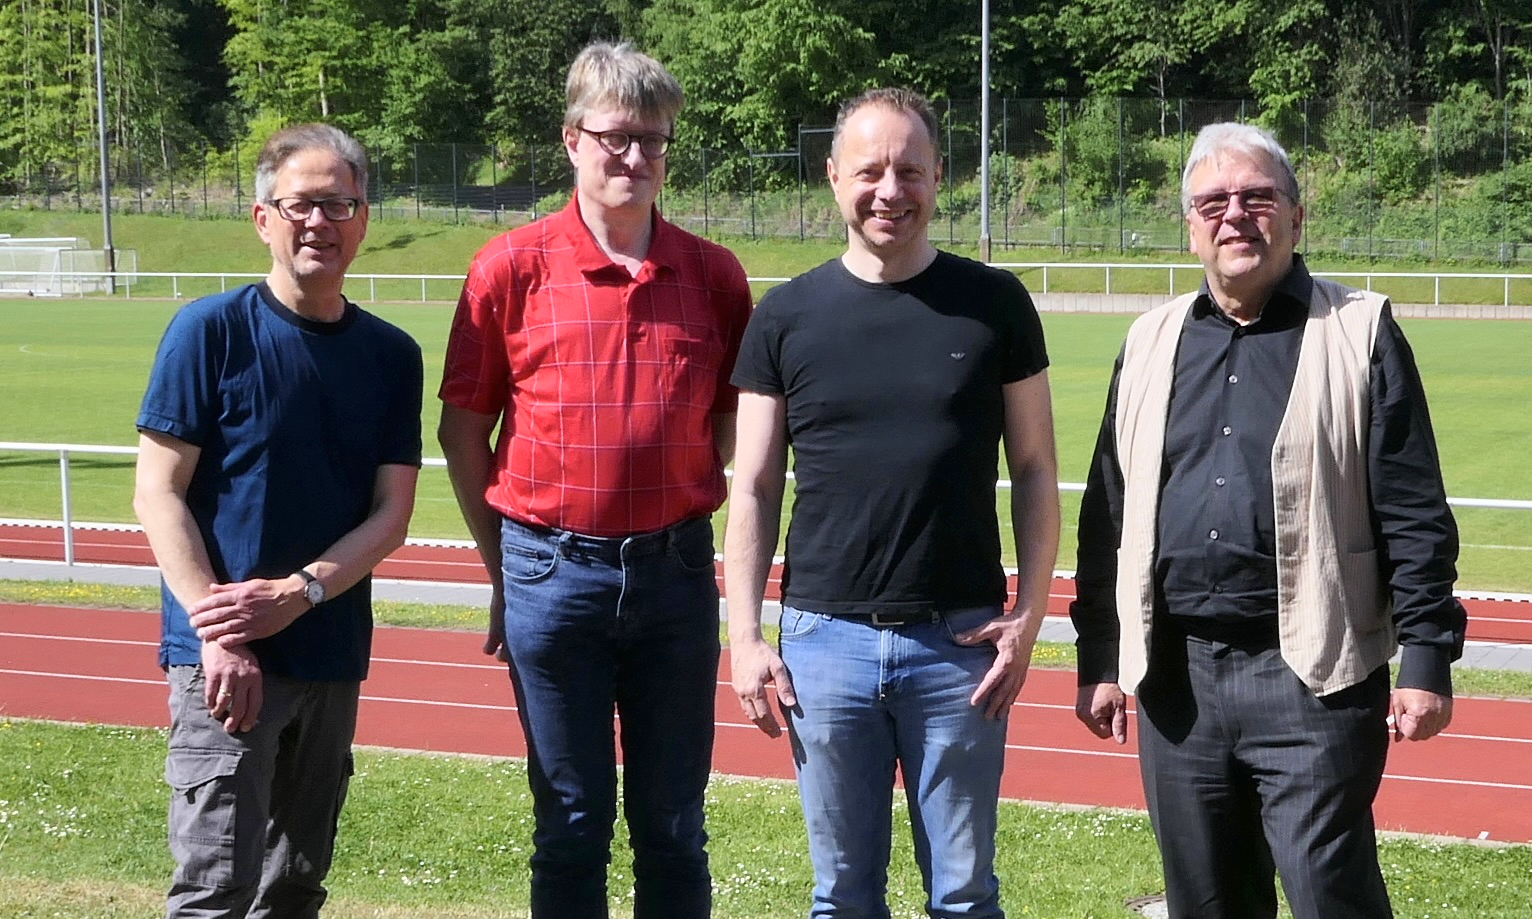 Mai 2022: der neue Vorstand der ArGe Baltikum (v.l.n.r.): Martin Bechstedt (stellvertrender Vorsitzender), Torsten Berndt (Vorsitzender), Michael Haslau (Kassenverwalter), Friedhelm Doell (Webmaster und Corporate Designer)